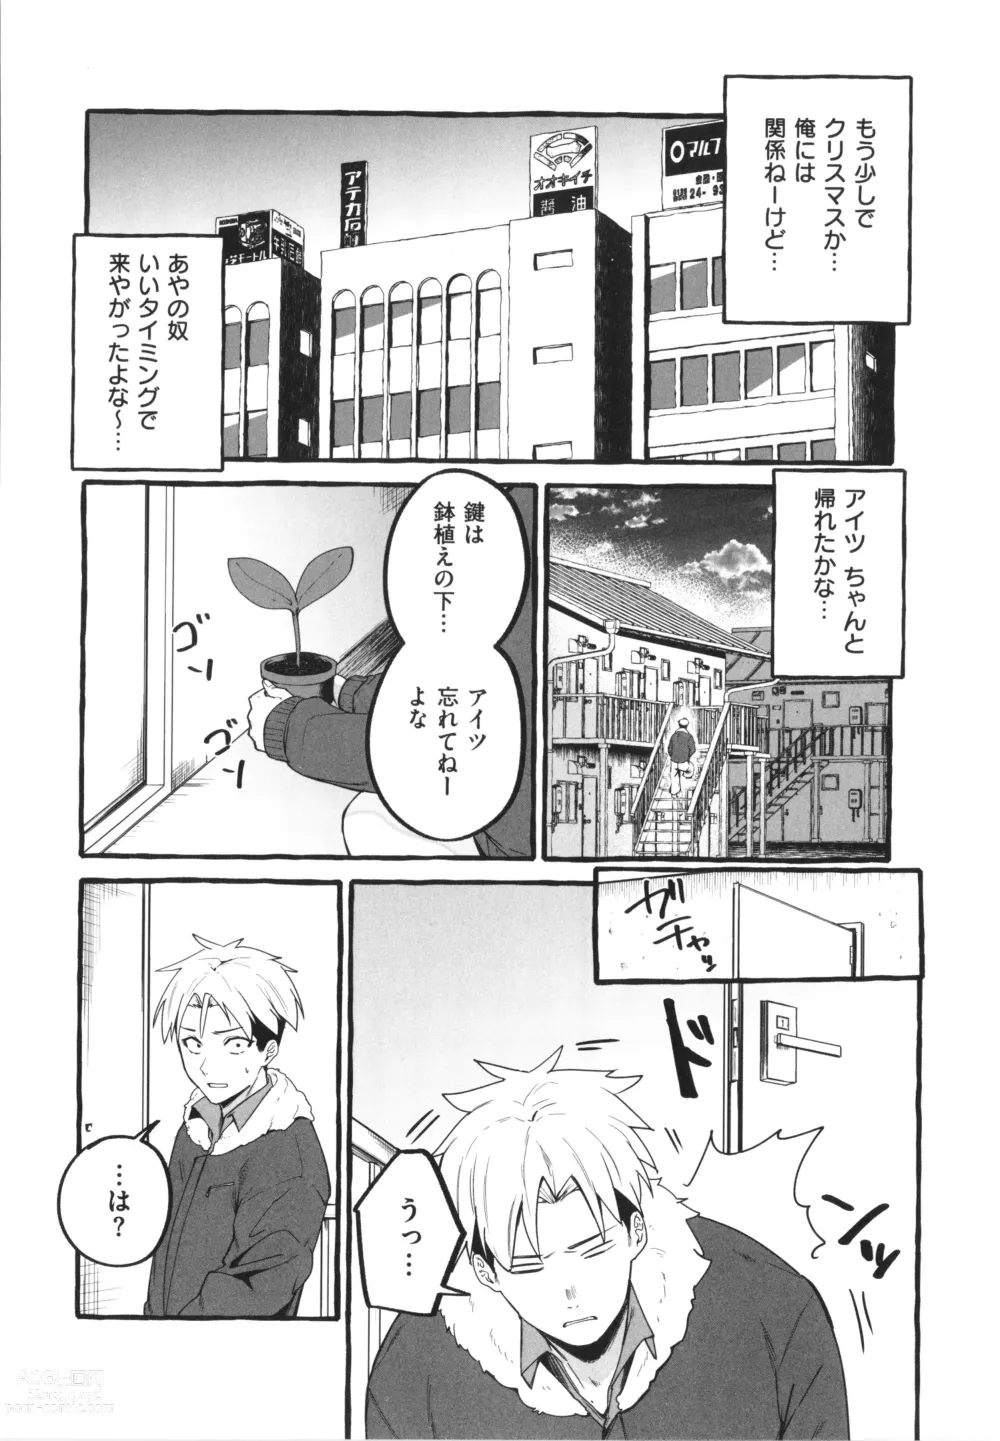 Page 177 of manga #Junai Kanojo